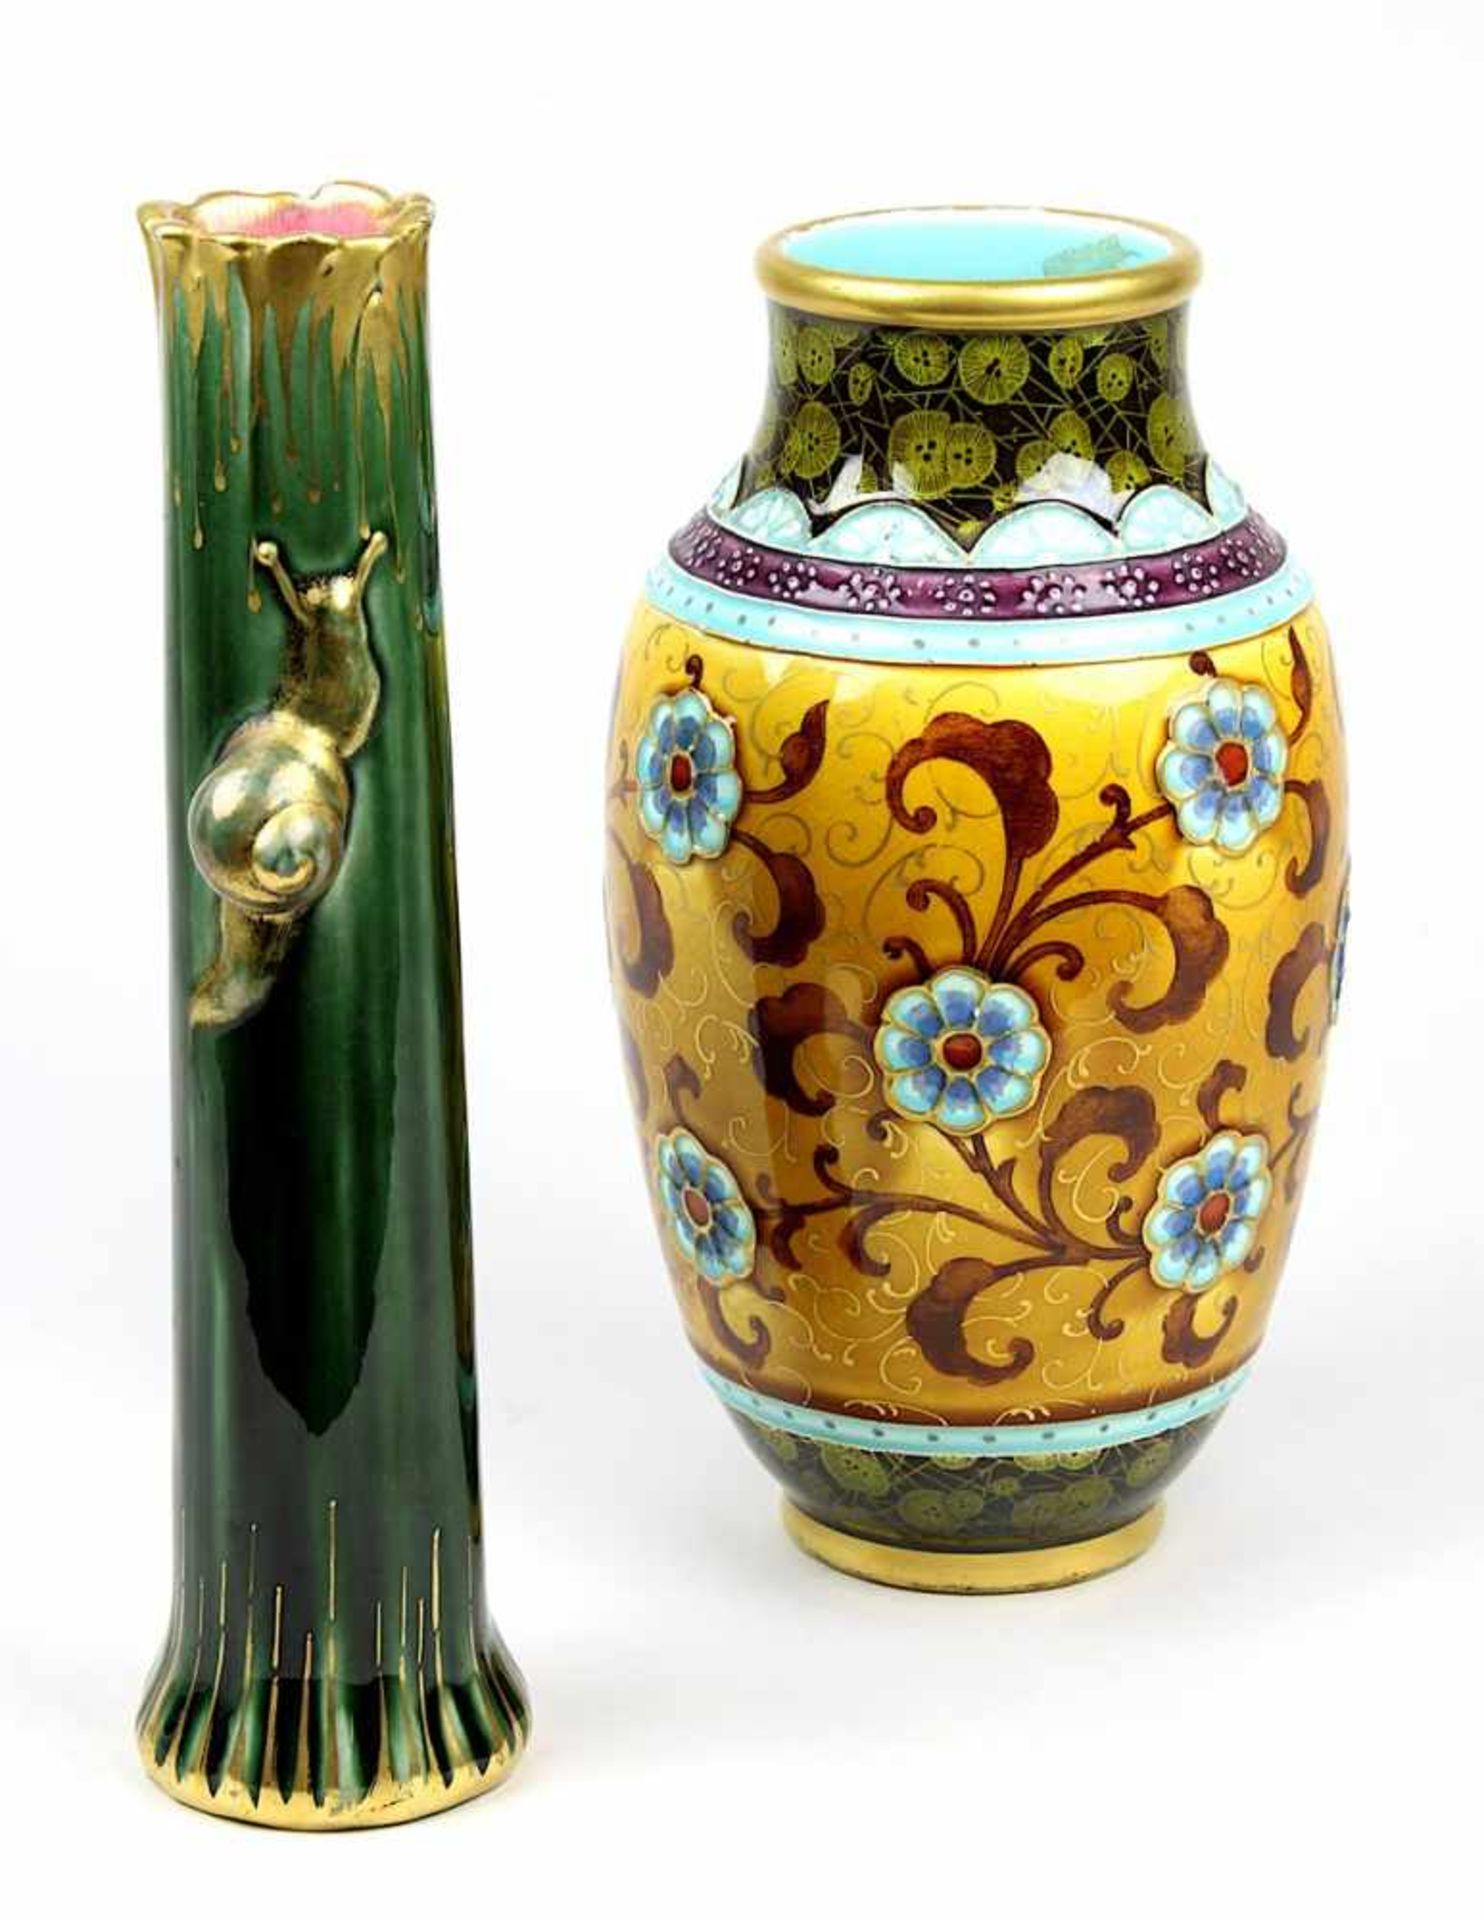 Zwei Saargemünder Majolika Vasen, Utschneider & Cie, um 1900 - 1910, Keramik, weißer Scherben,